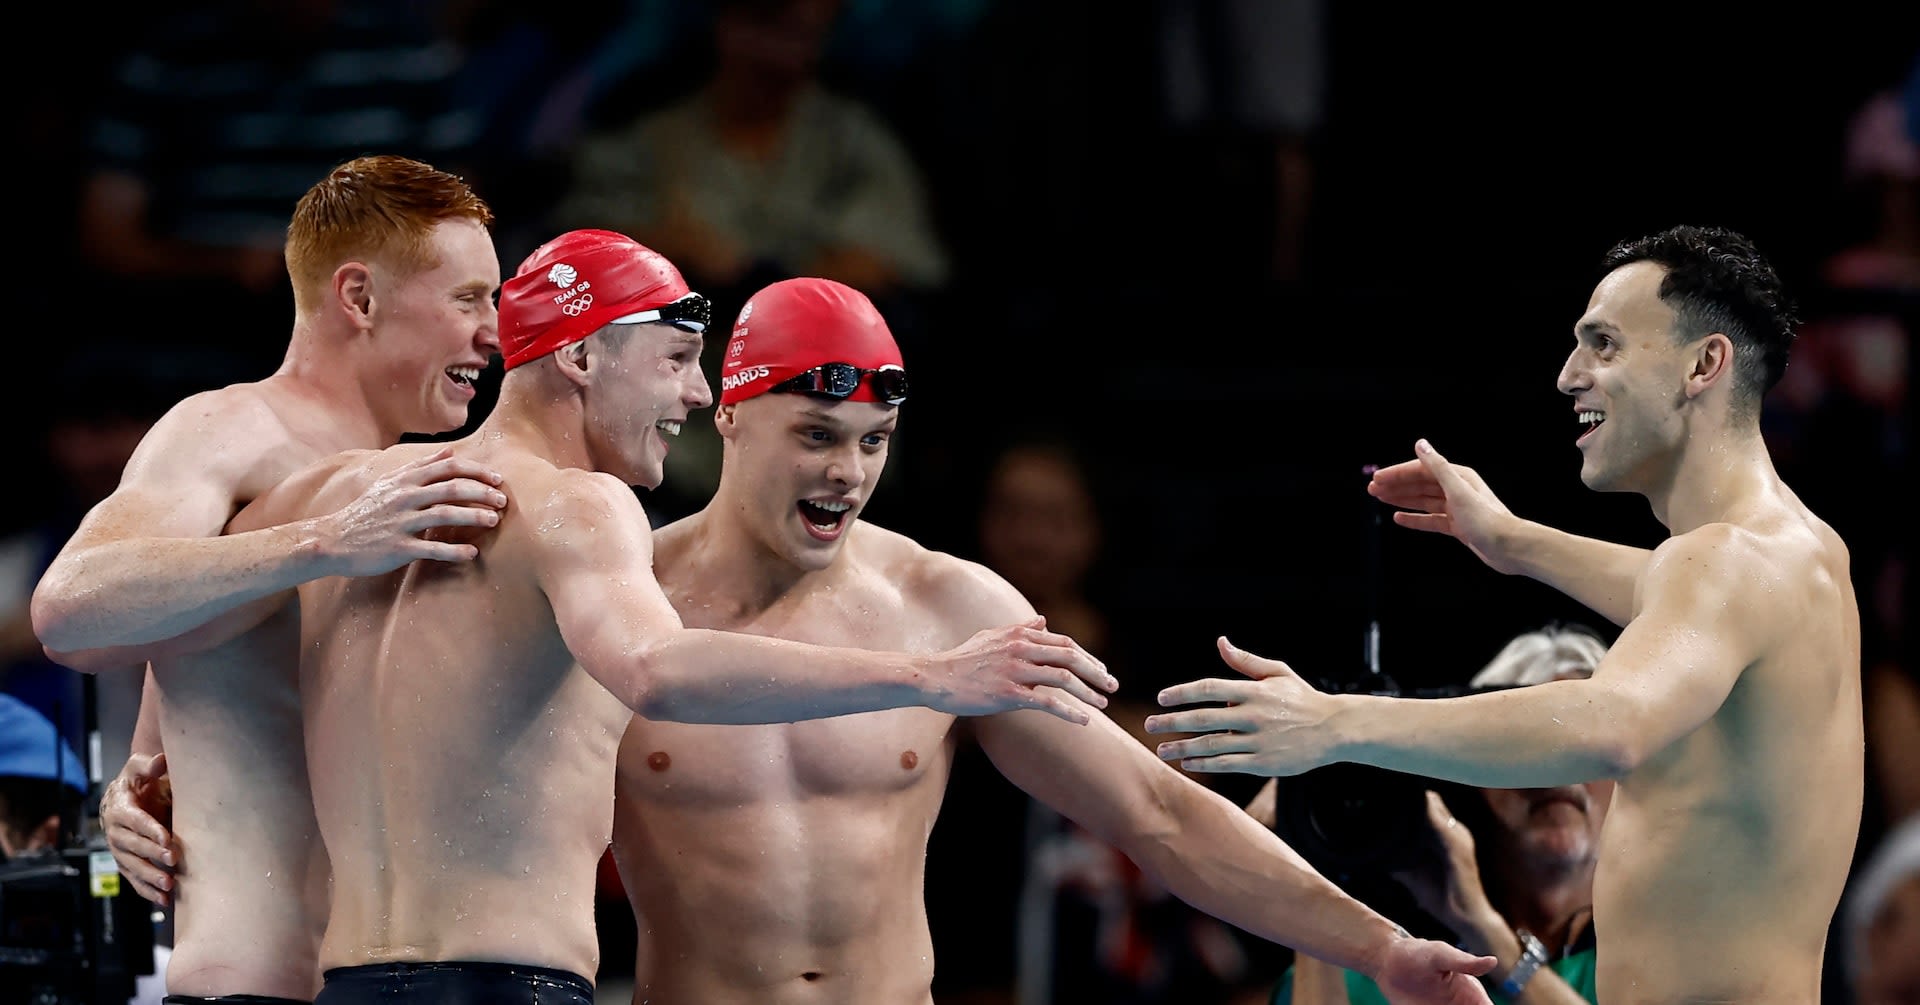 Swimming-Britain retain men's 4x200 metres freestyle gold